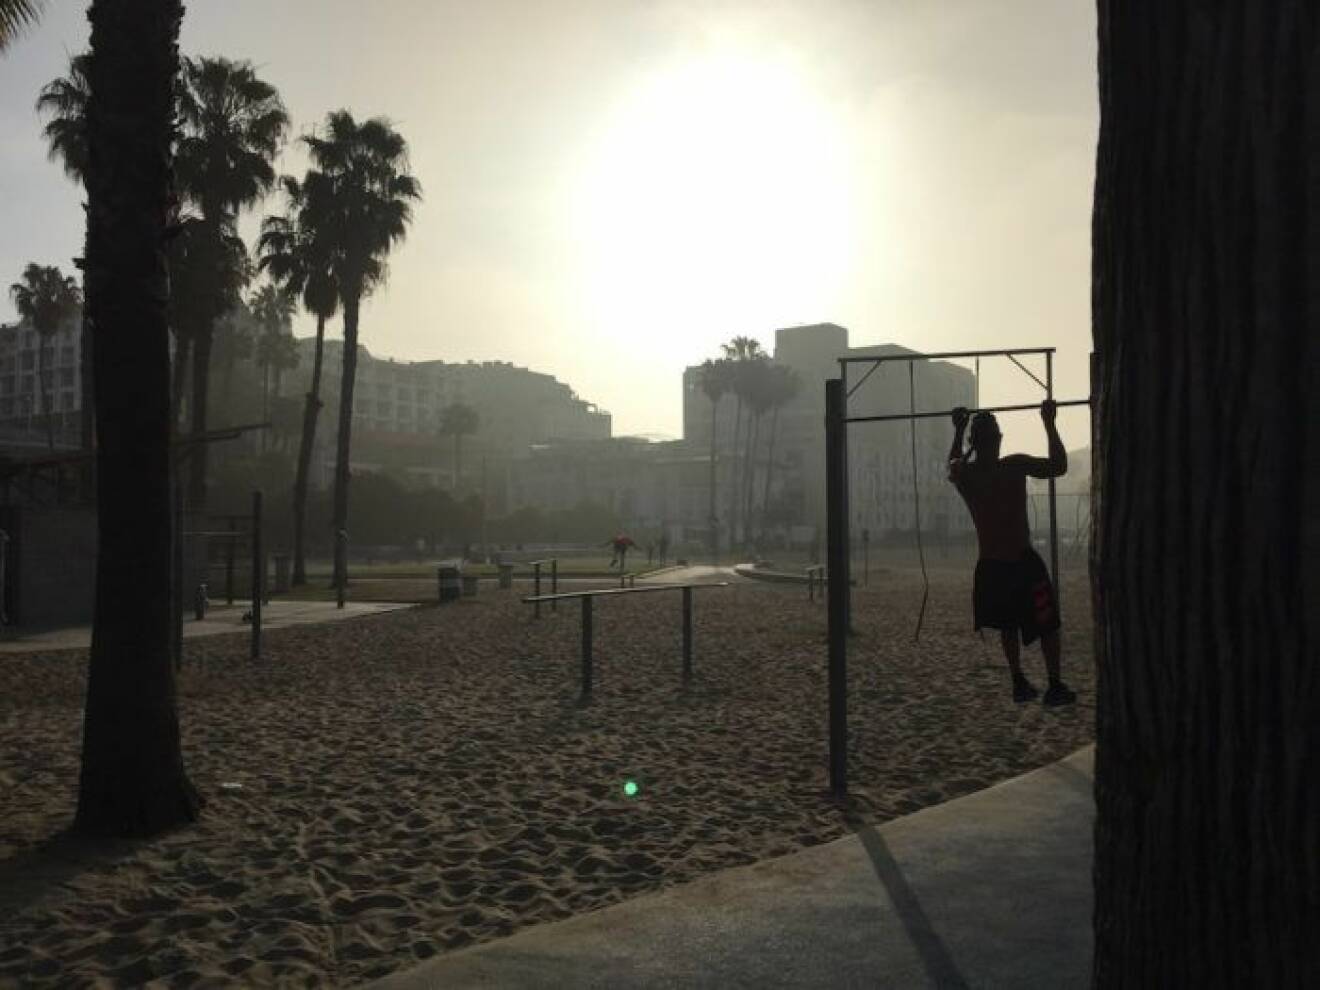 Välkända utegymmet Muscle Beach hittar du vid Santa Monica Pier, glöm inte att packa ner dina träningskläder. Men även om du inte vill träna själv så är det kul att ta en promenad förbi gymmet och kolla in alla hurtbullar, muskelbyggare och strandraggare.